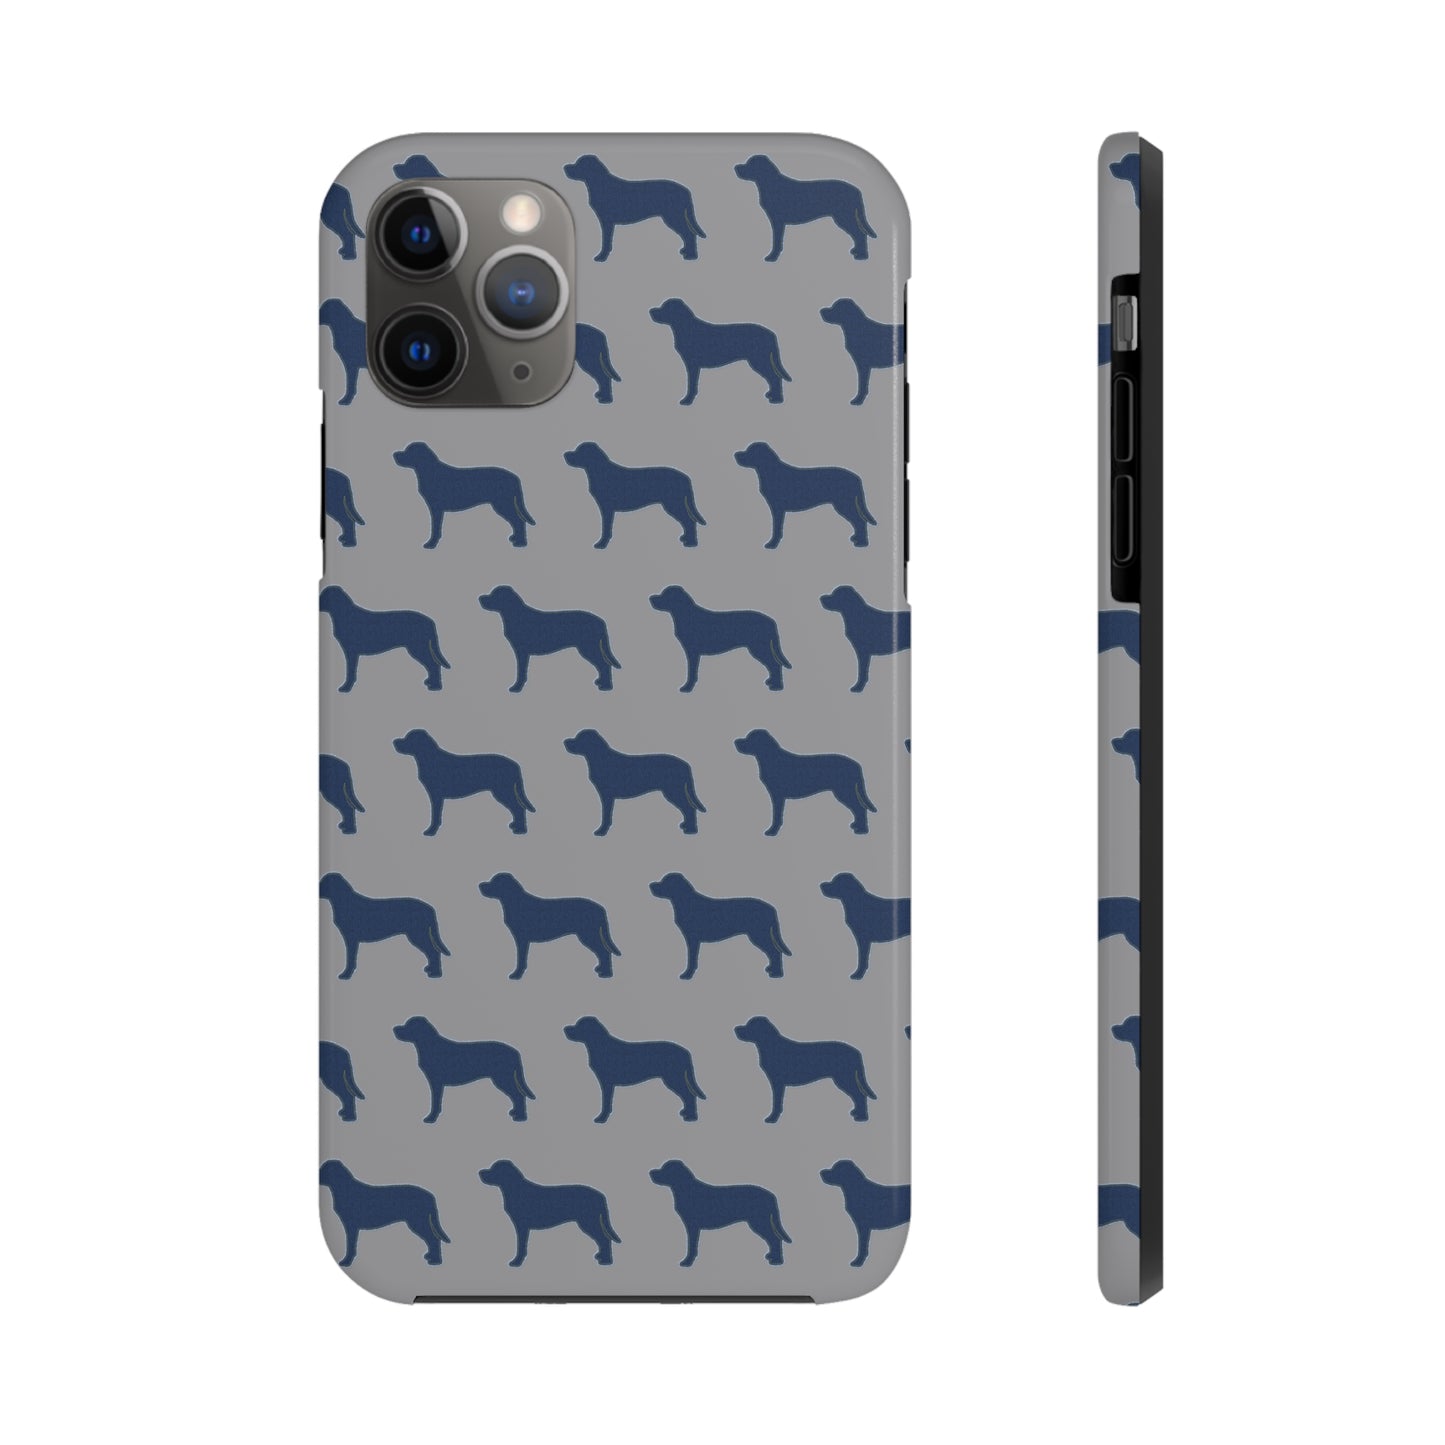 Labrador Retriever iPhone Tough Phone Cases